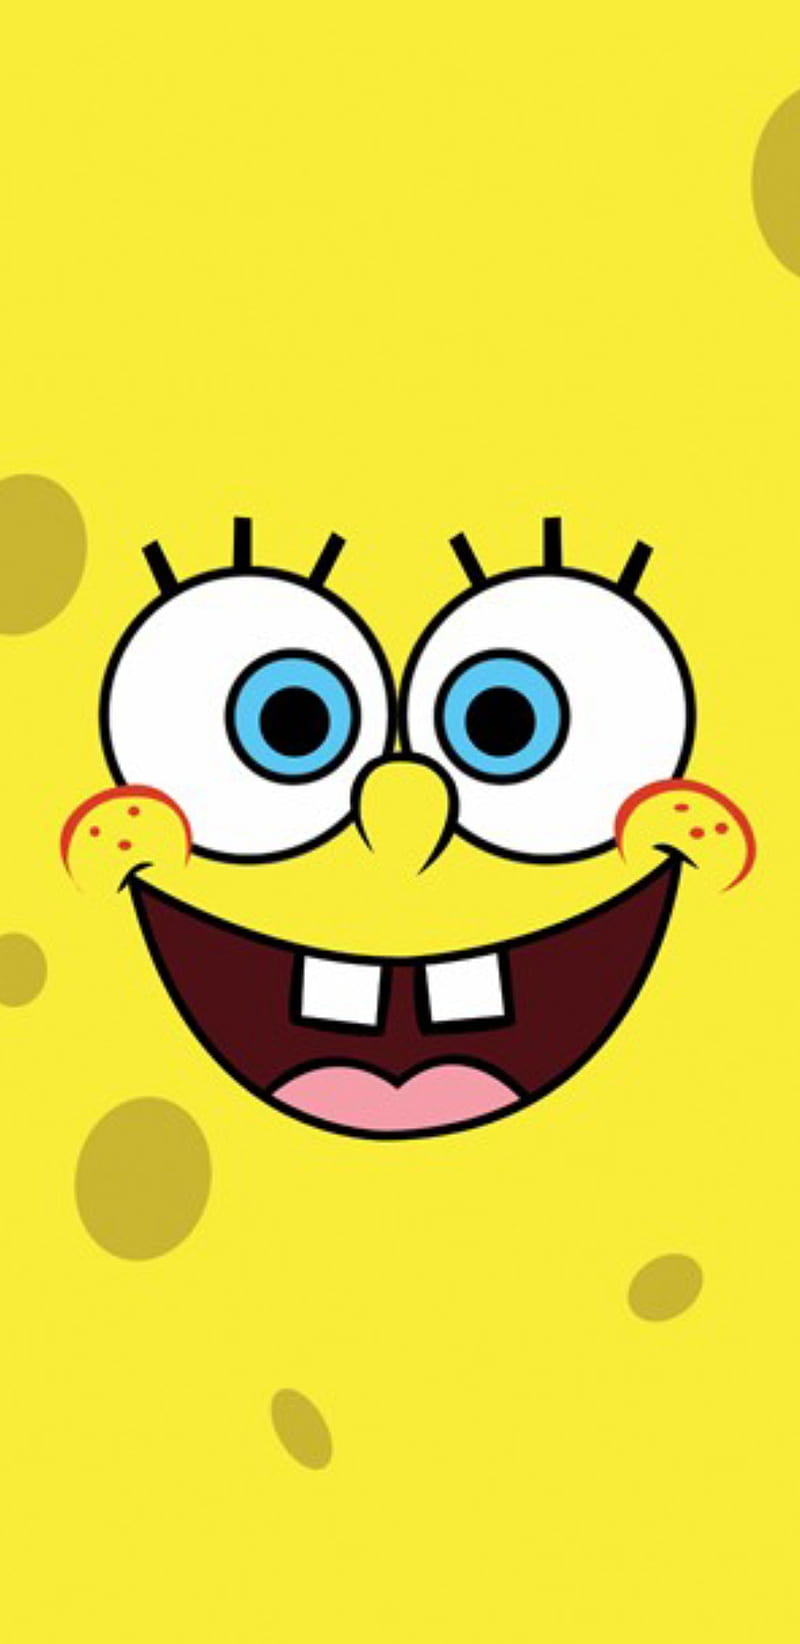 Bạn đam mê hoạt hình? Nếu còn chưa biết đùa vui với nhân vật Sponge Bob, hãy xem hình ảnh Sponge Bob hoạt hình này. Thông qua hình ảnh, bạn sẽ có cơ hội khám phá thế giới đặc biệt và đáng yêu của nhân vật này với câu chuyện hài hước và cảm động.